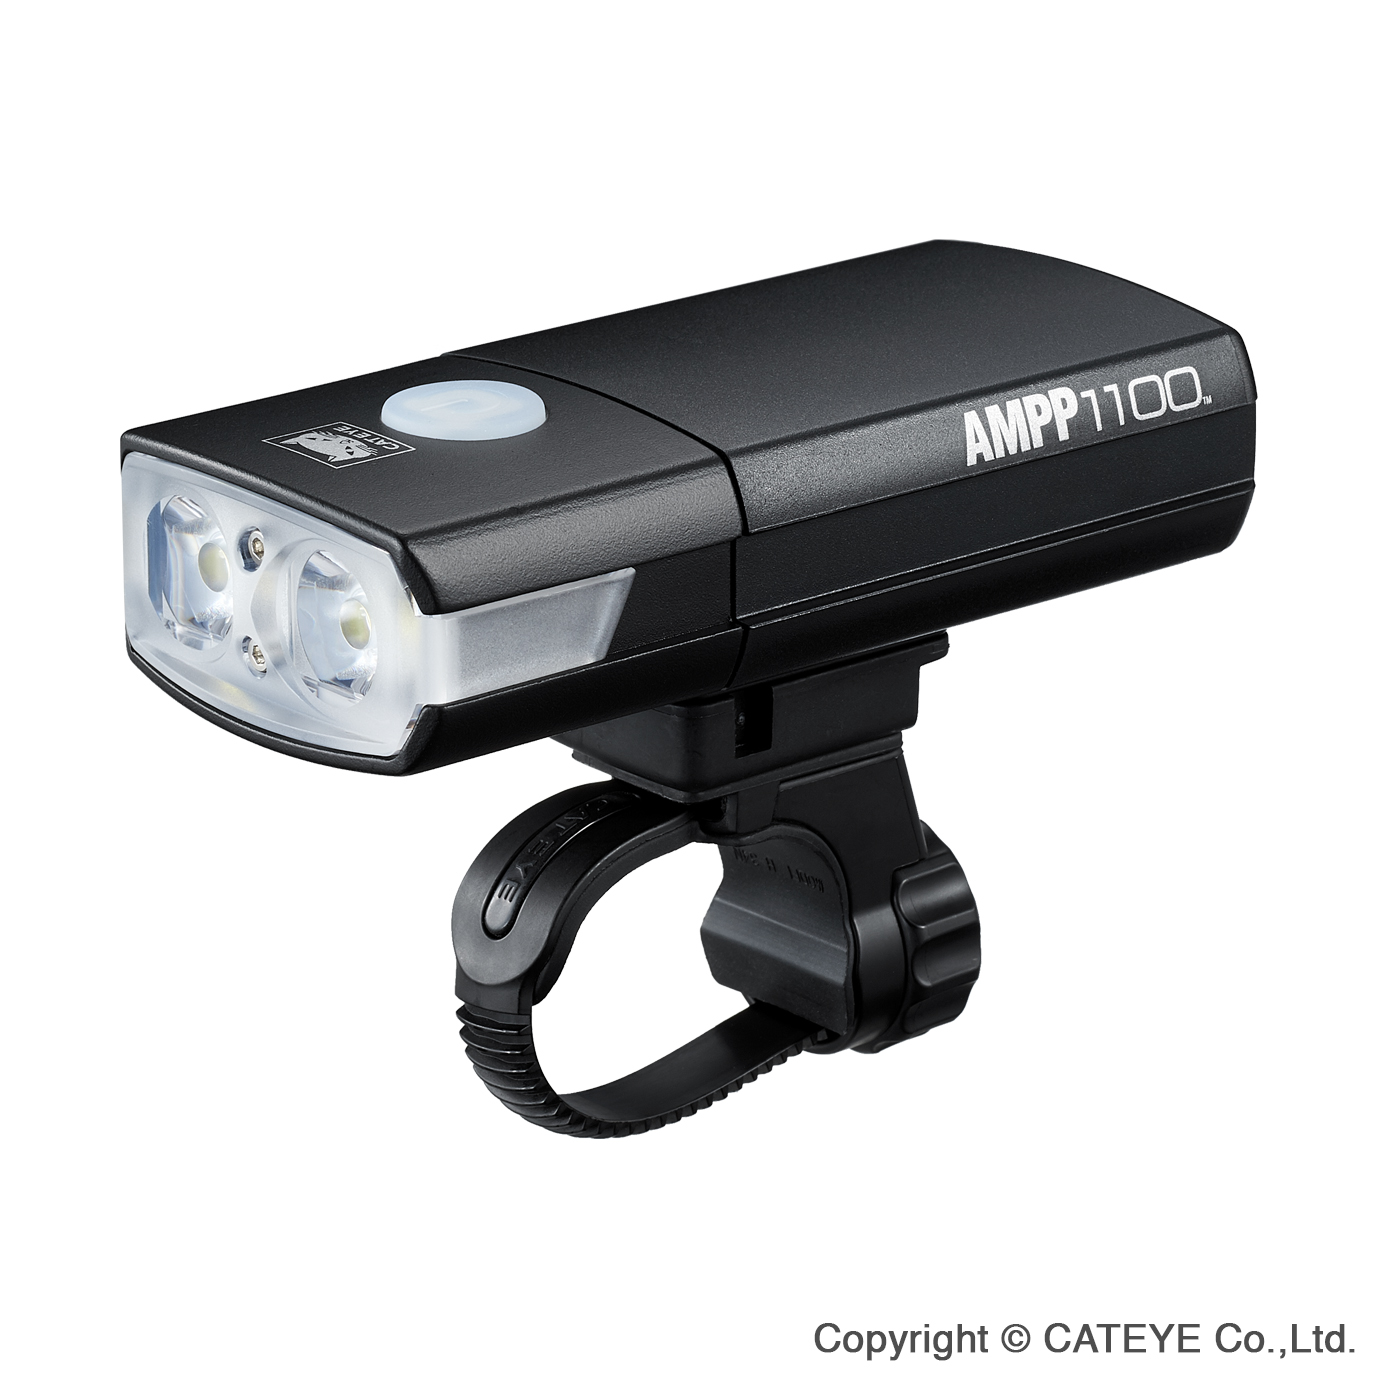 CATEYE 高亮度車燈AMPP1100